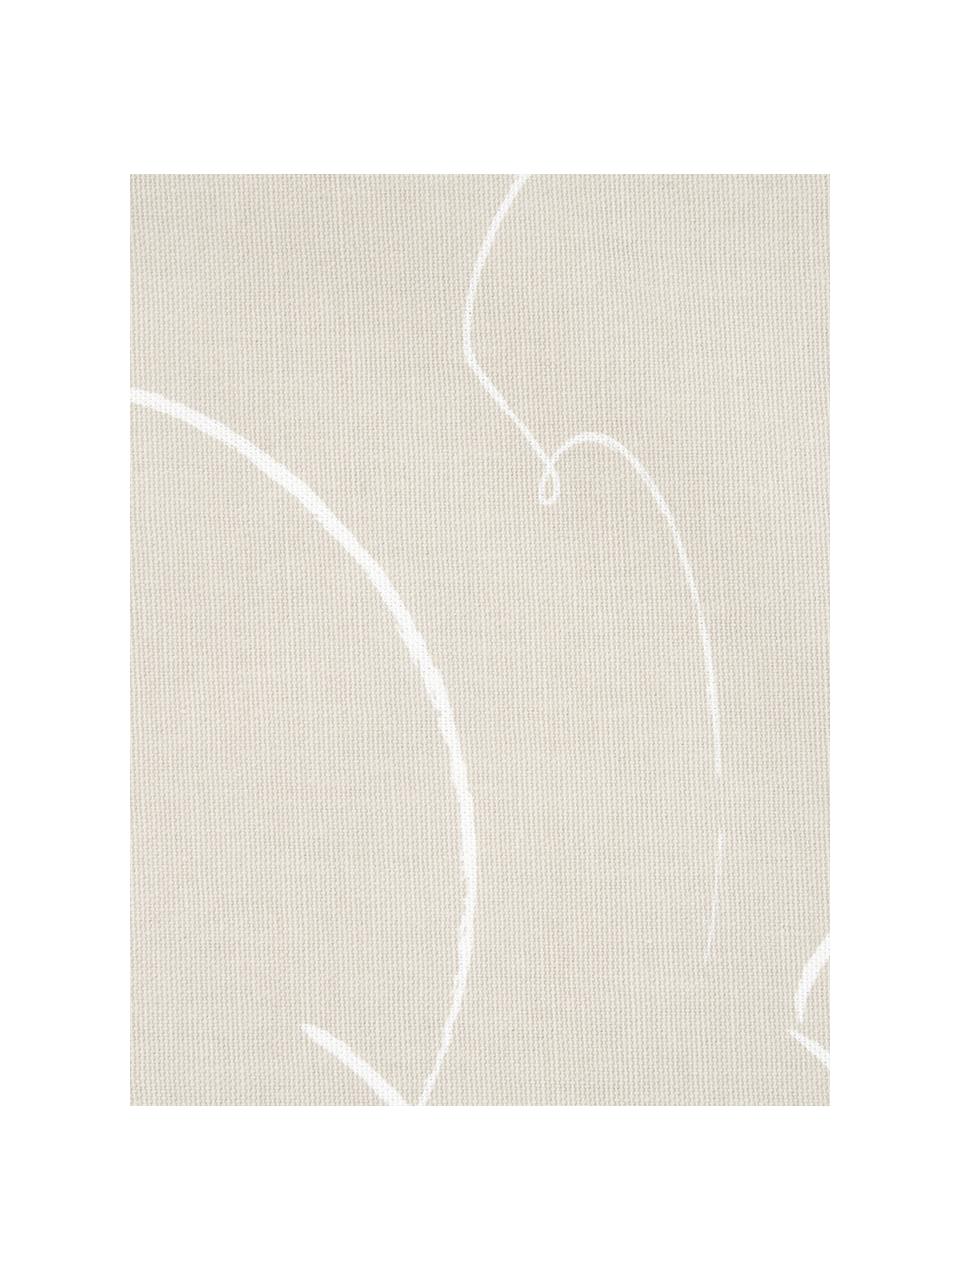 Kussenhoes Amino met abstract patroon, Katoen, Beige/wit, 40 x 40 cm